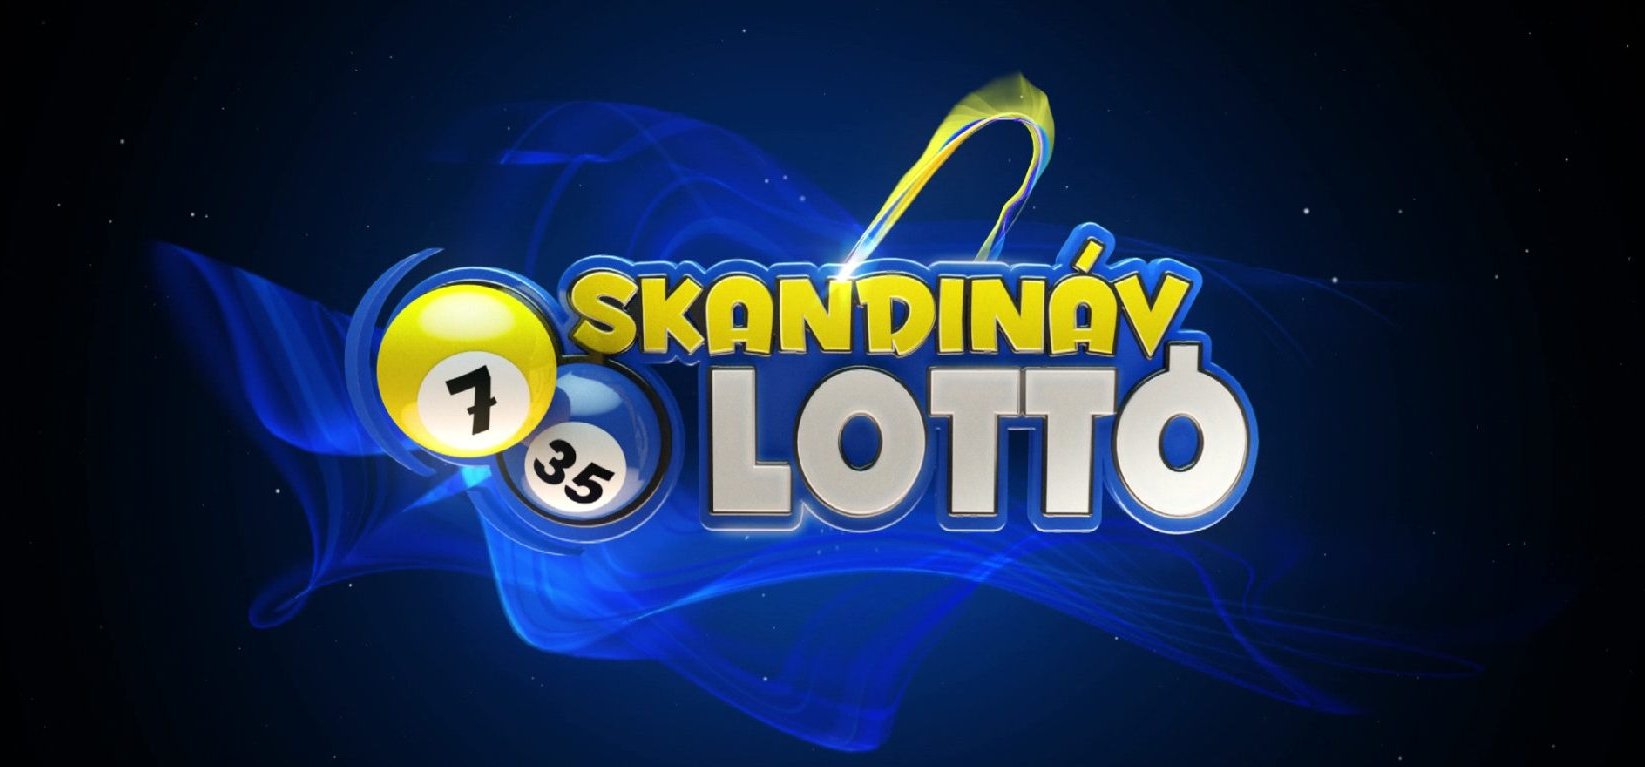 Skandináv lottó: új széria kezdődött, és a magyarok bizony ezt a főnyereményt is zsebre akarták vágni